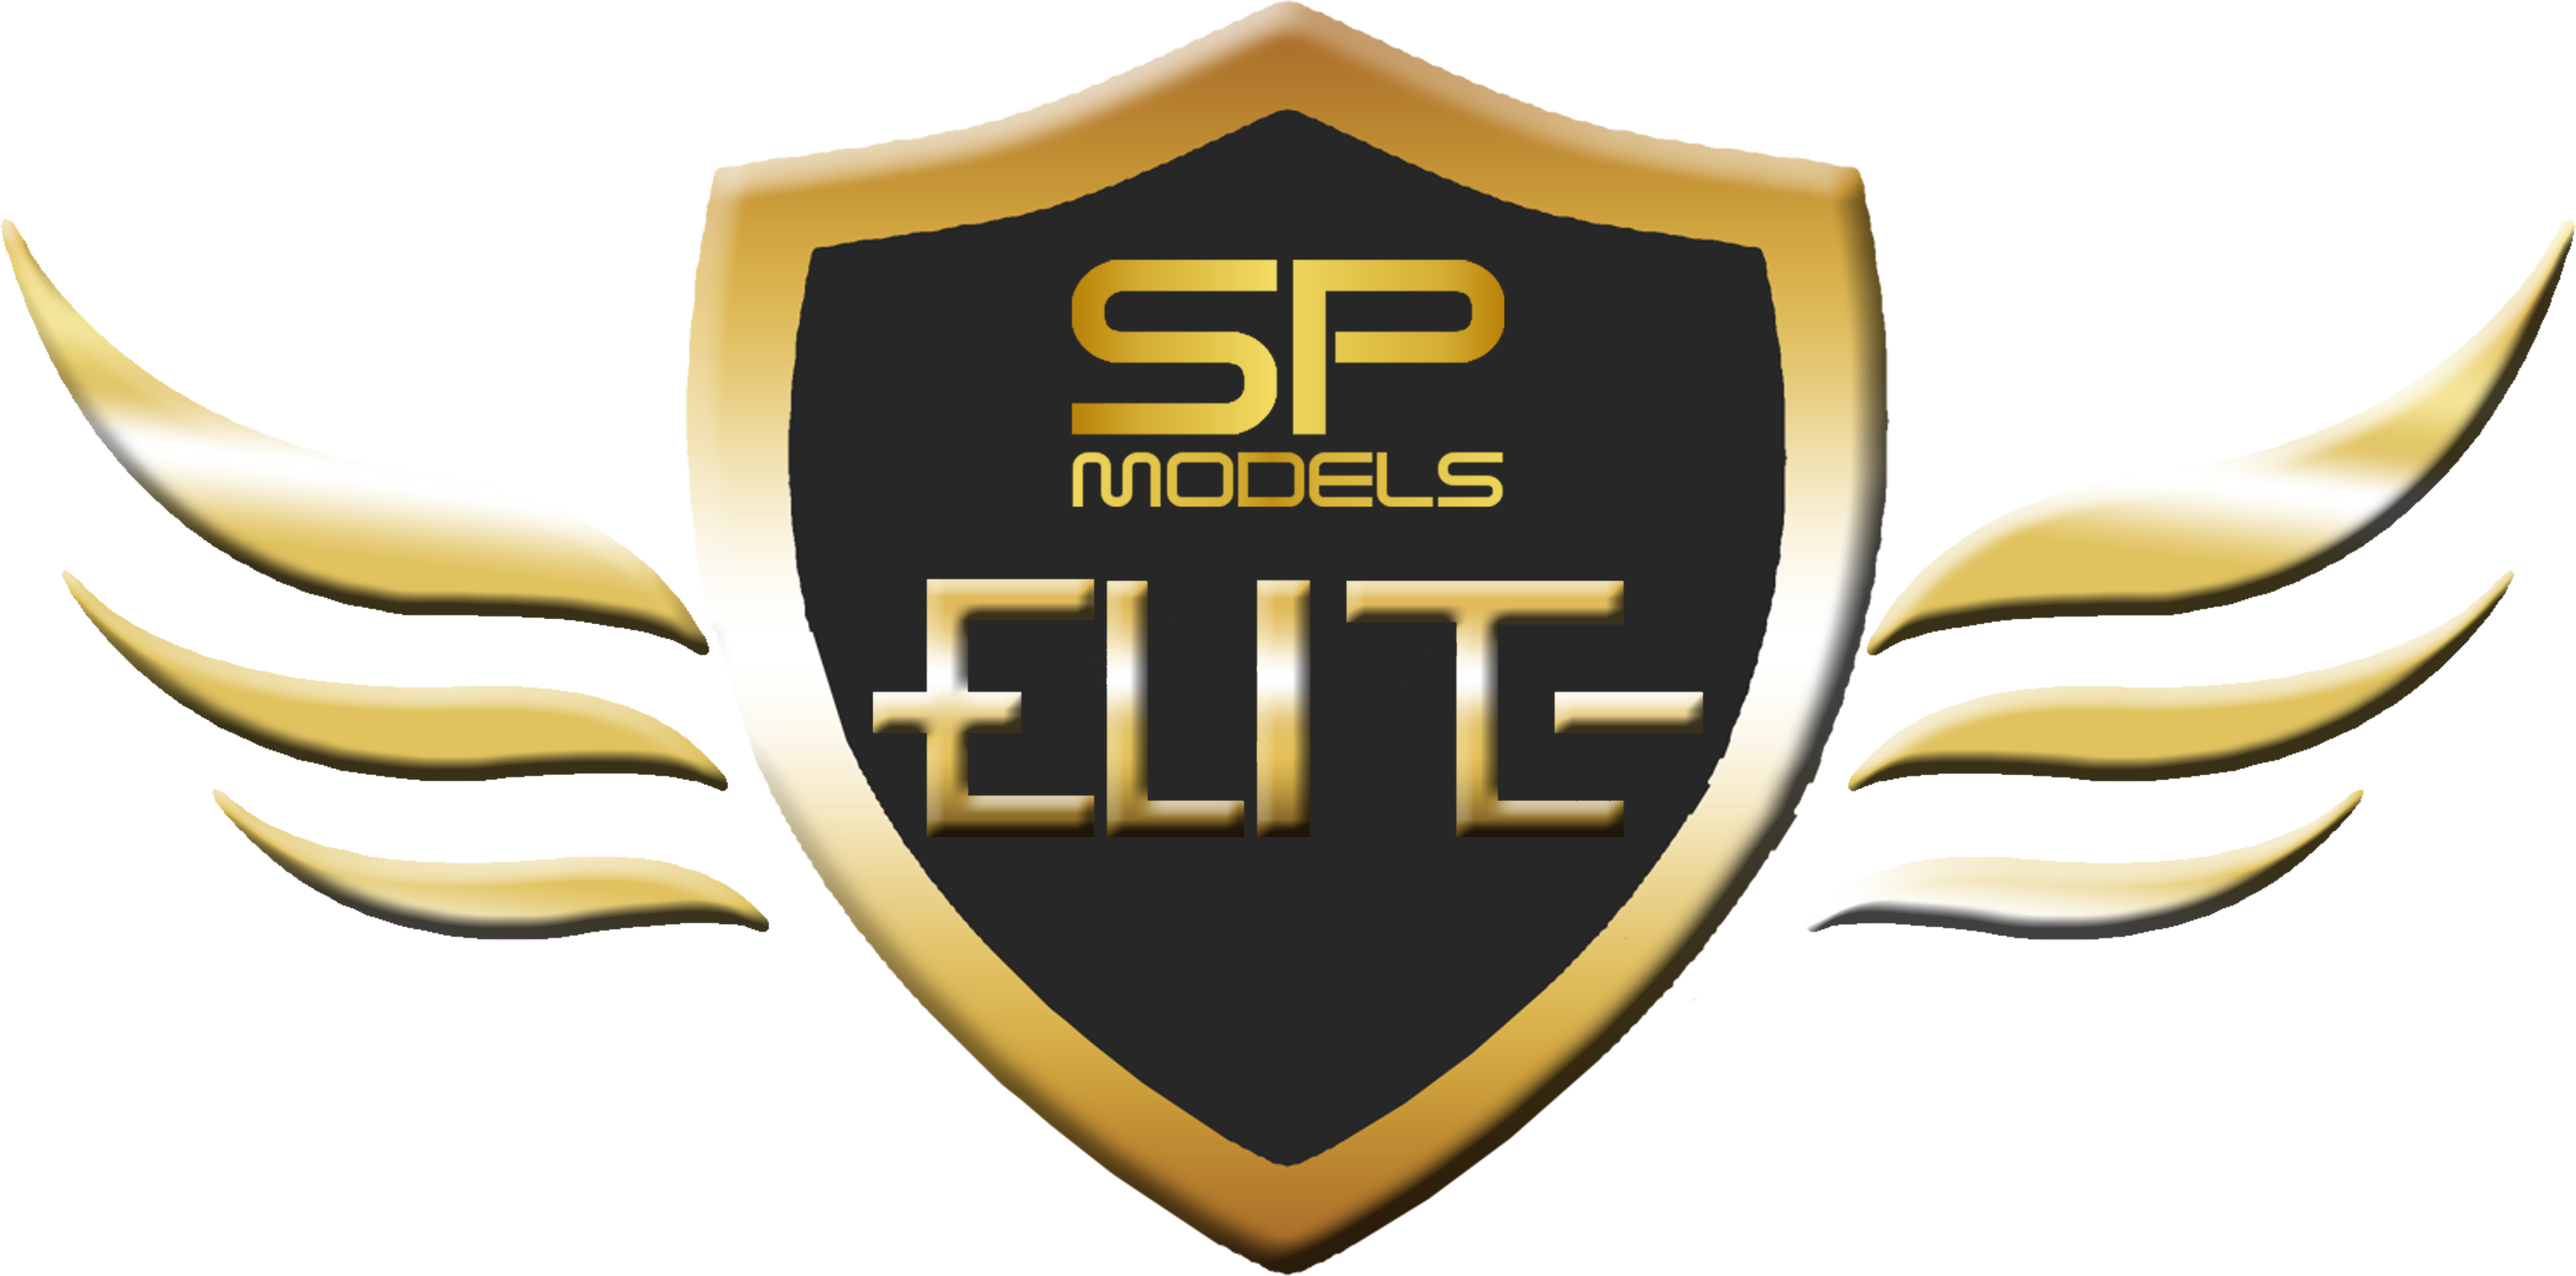 SP Models Elite